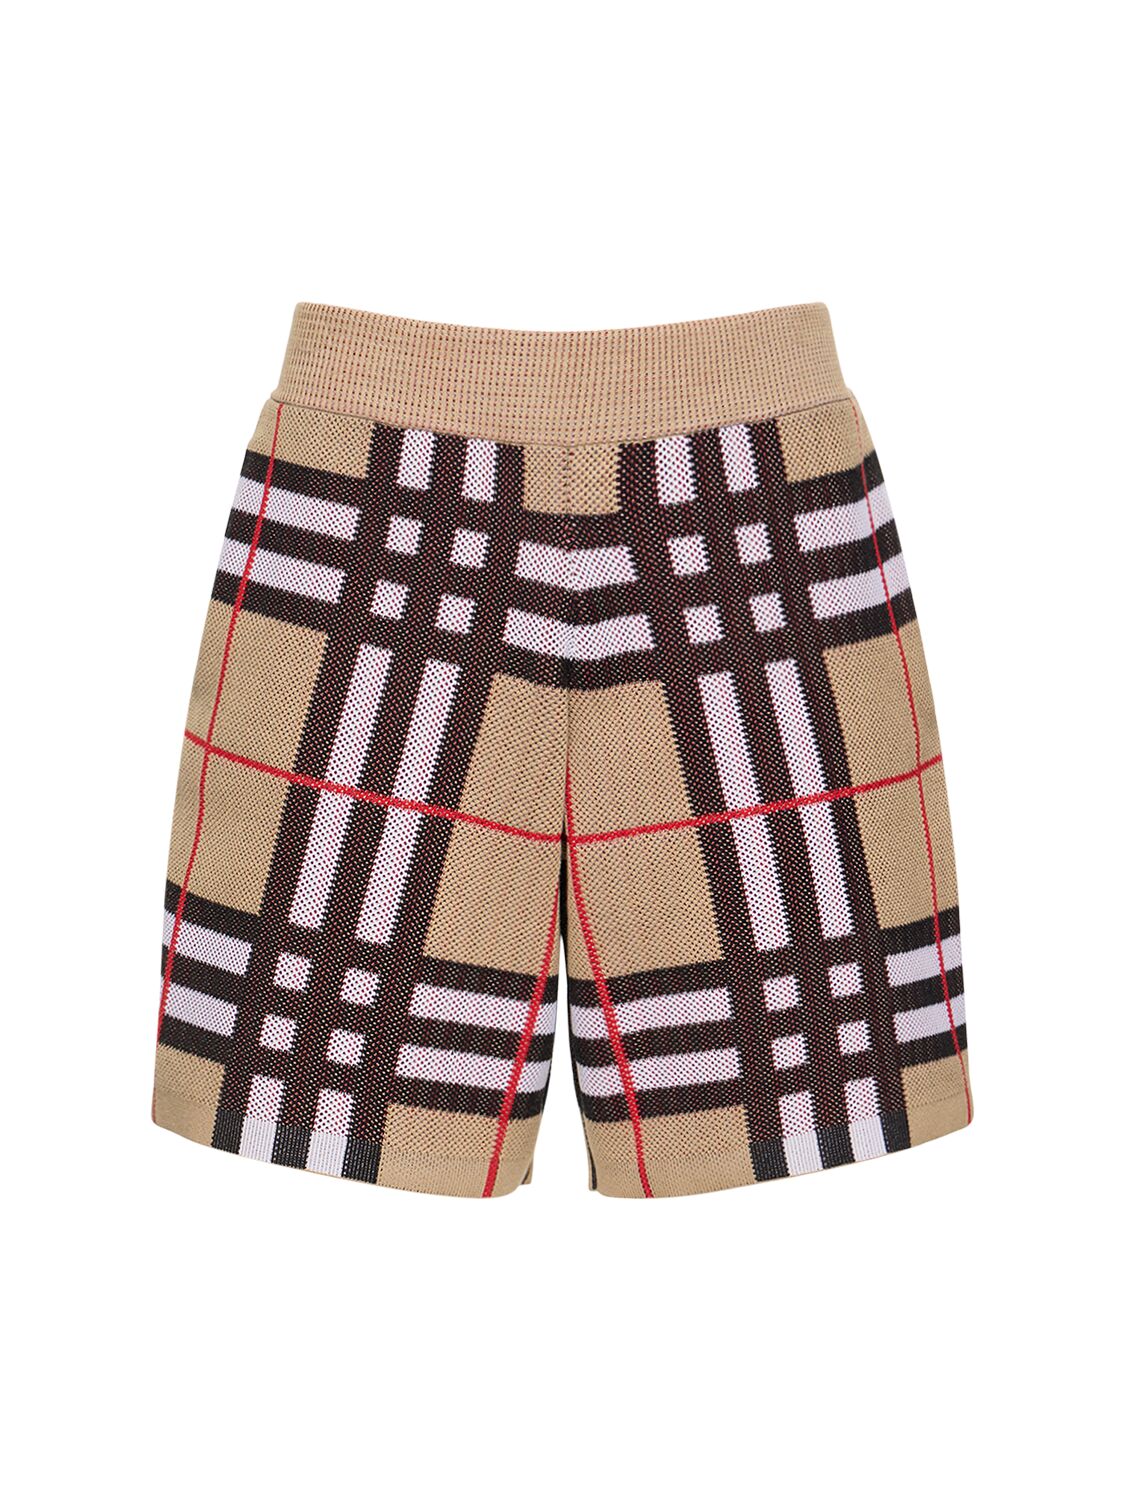 Hunterley Check Knit Shorts – MEN > CLOTHING > SHORTS